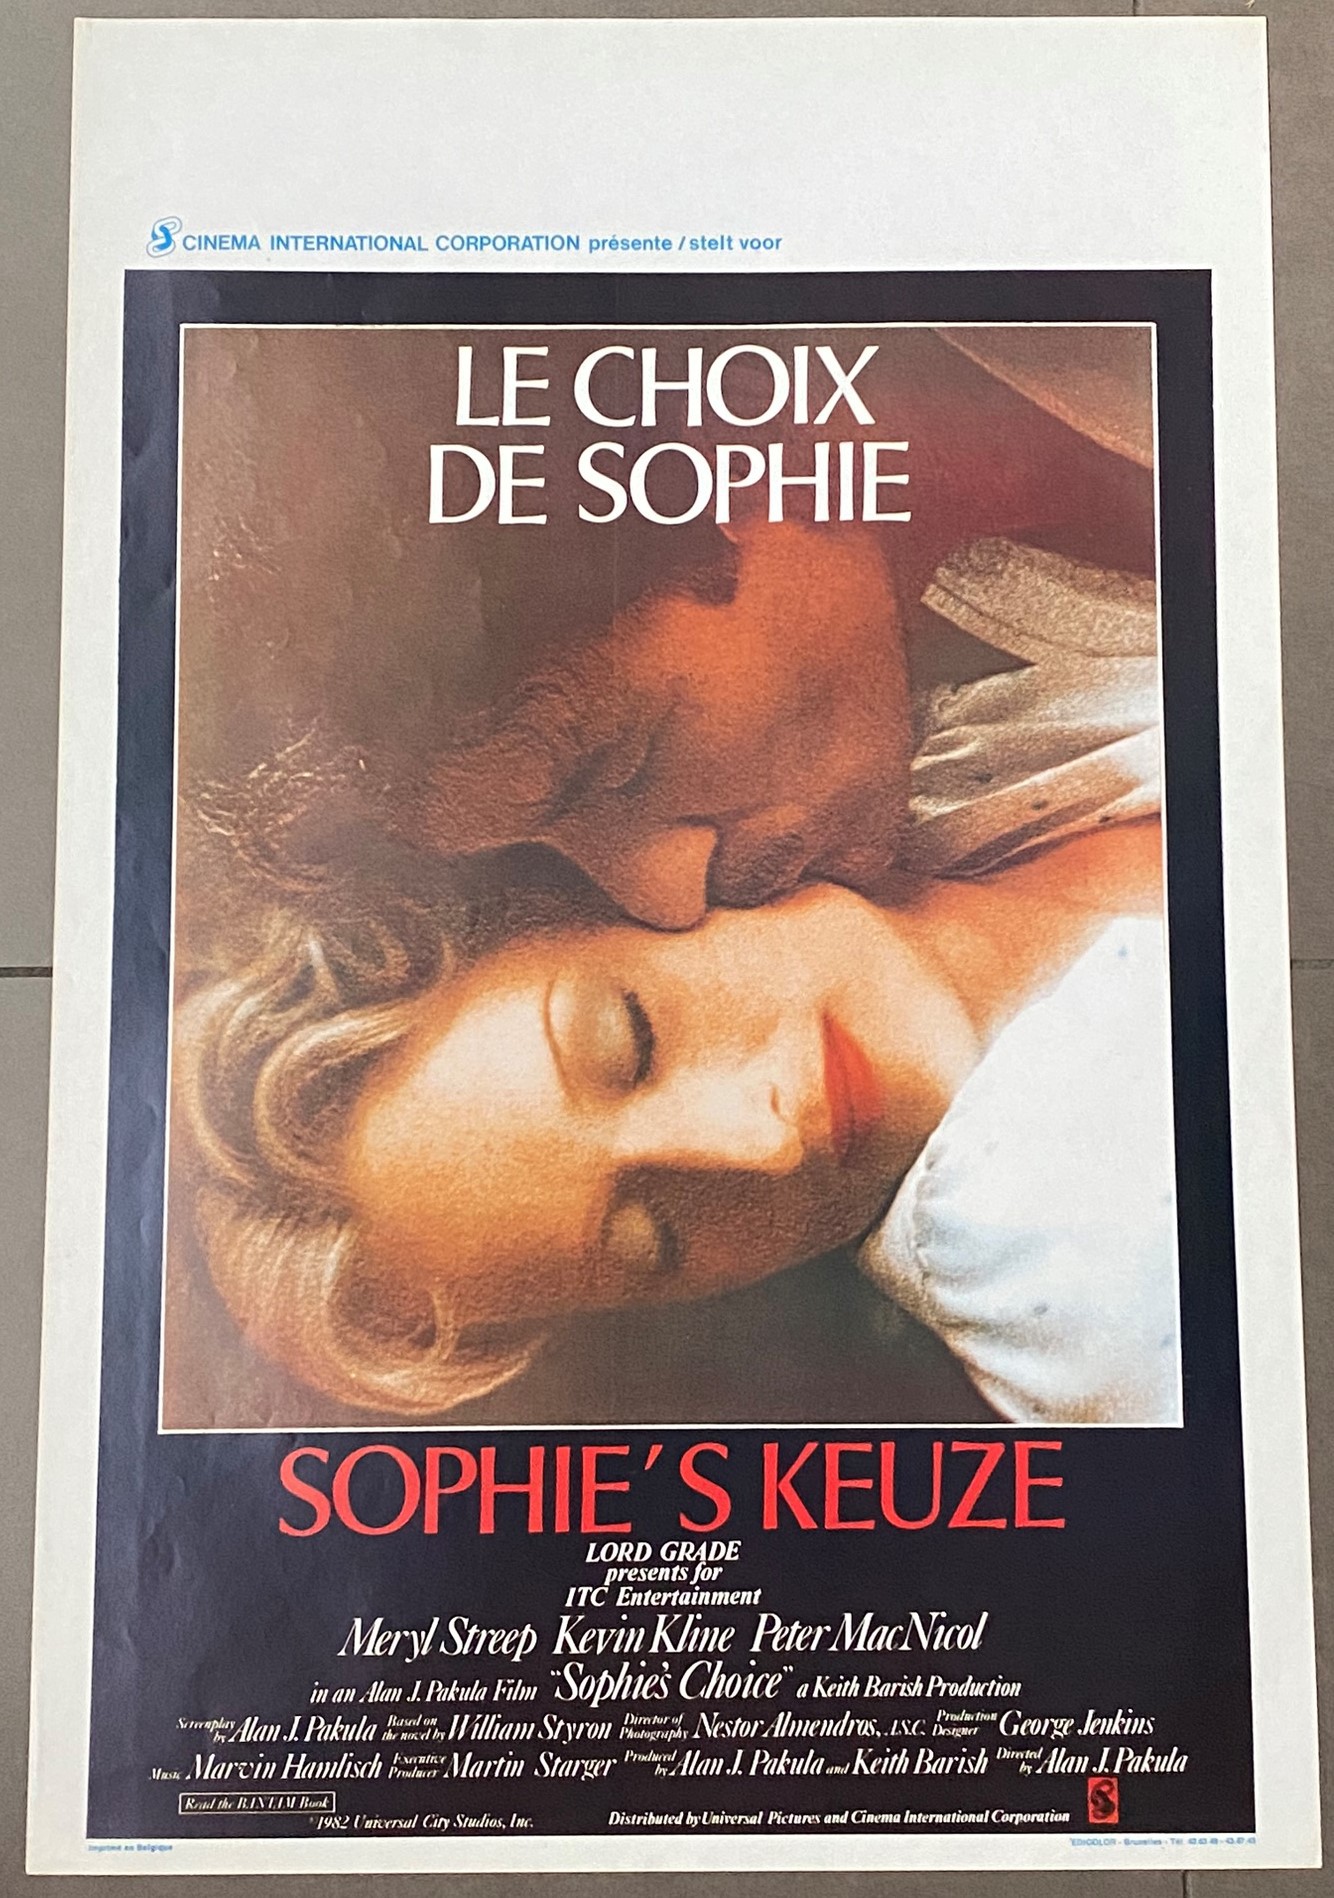 Le Choix de Sophie, Alan J. Pakula (1982)